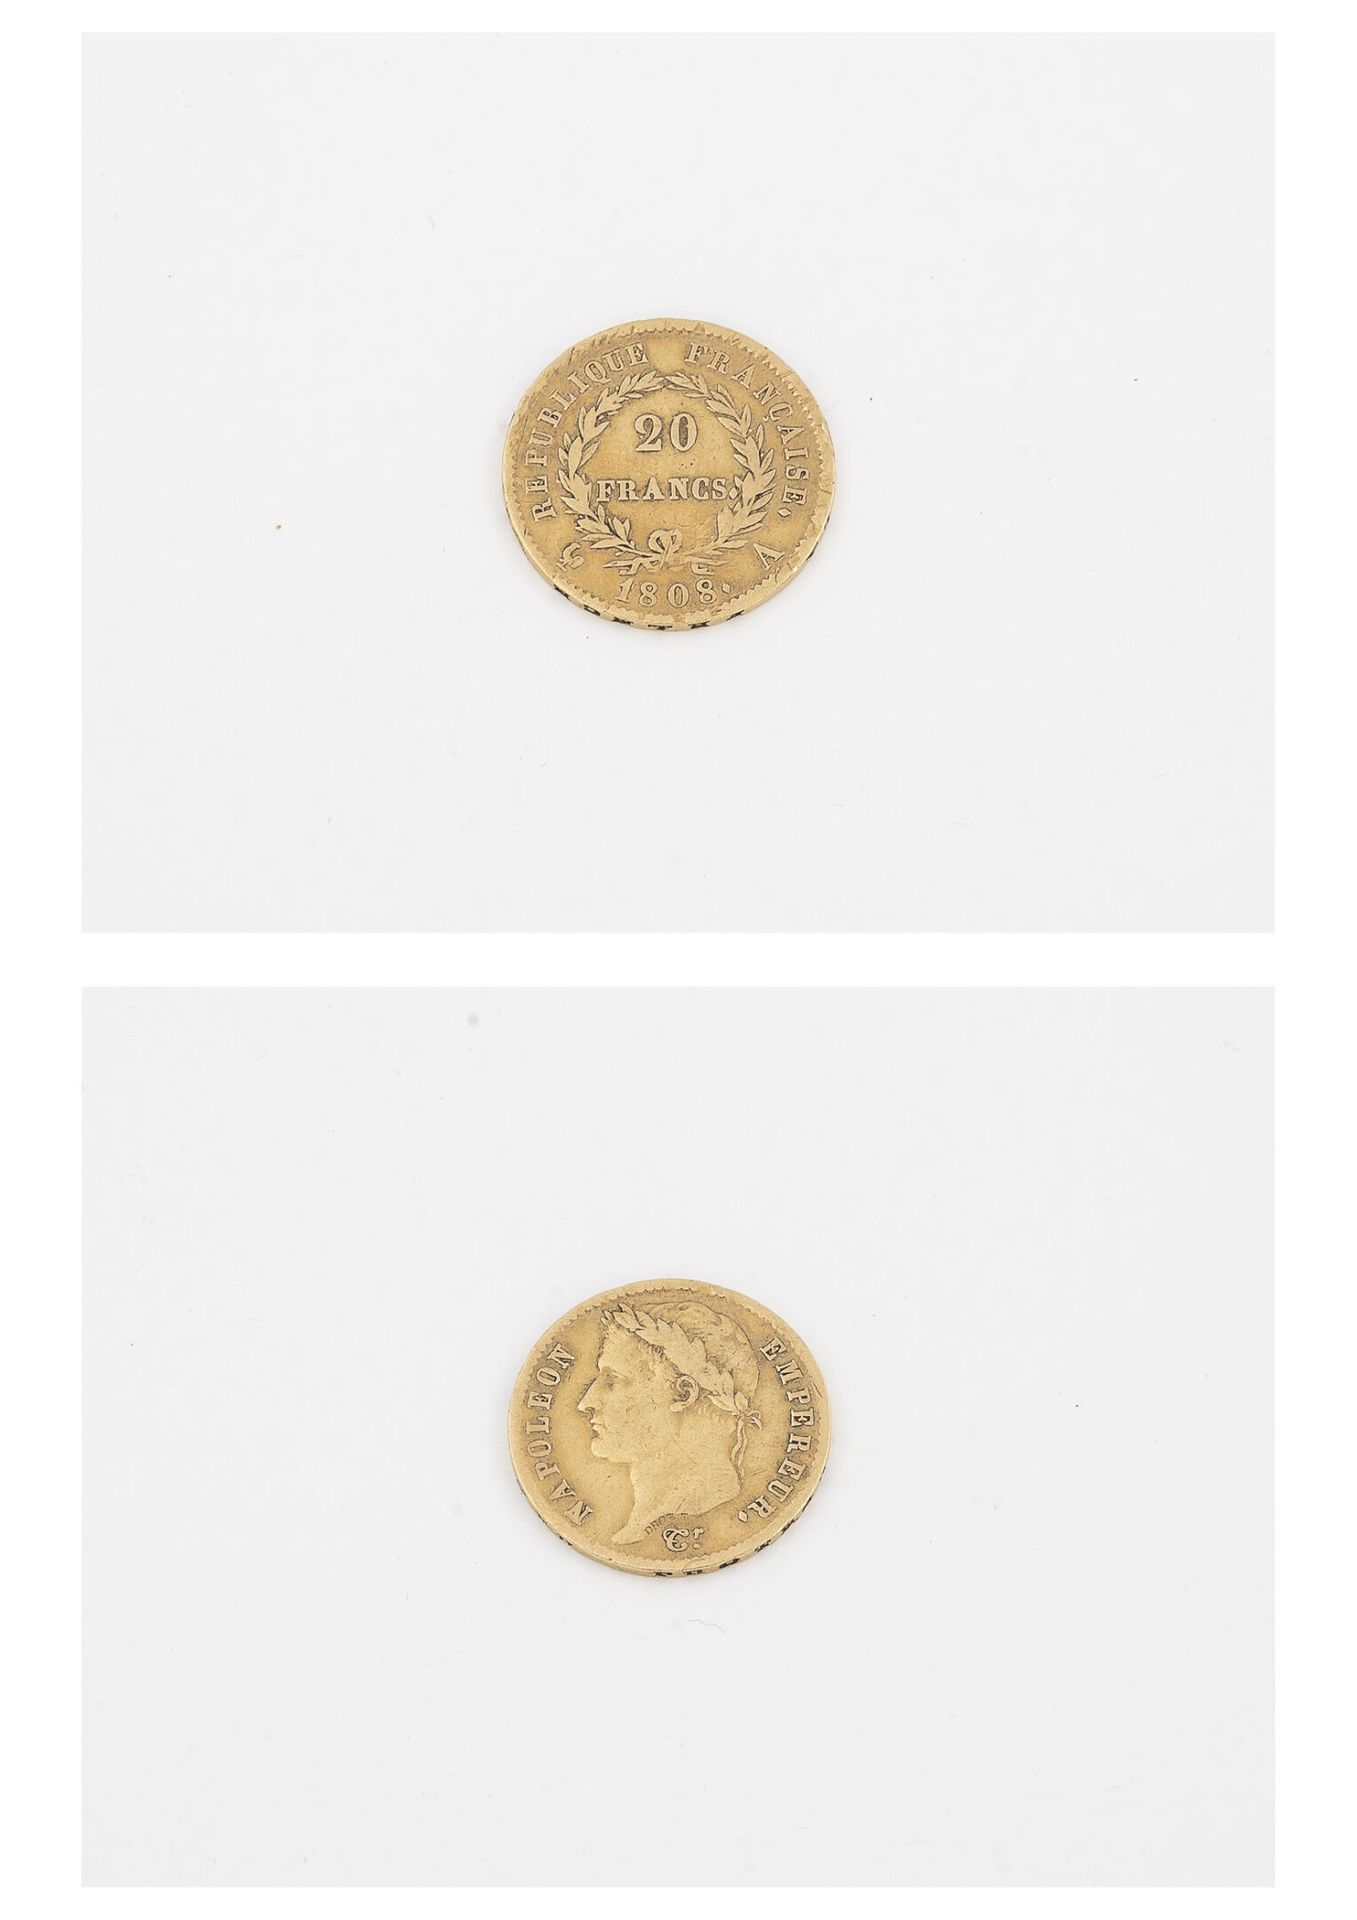 France Moneda de oro de 20 francos, 1808, Emperador Napoleón. 

Peso : 6,4 g. 

&hellip;